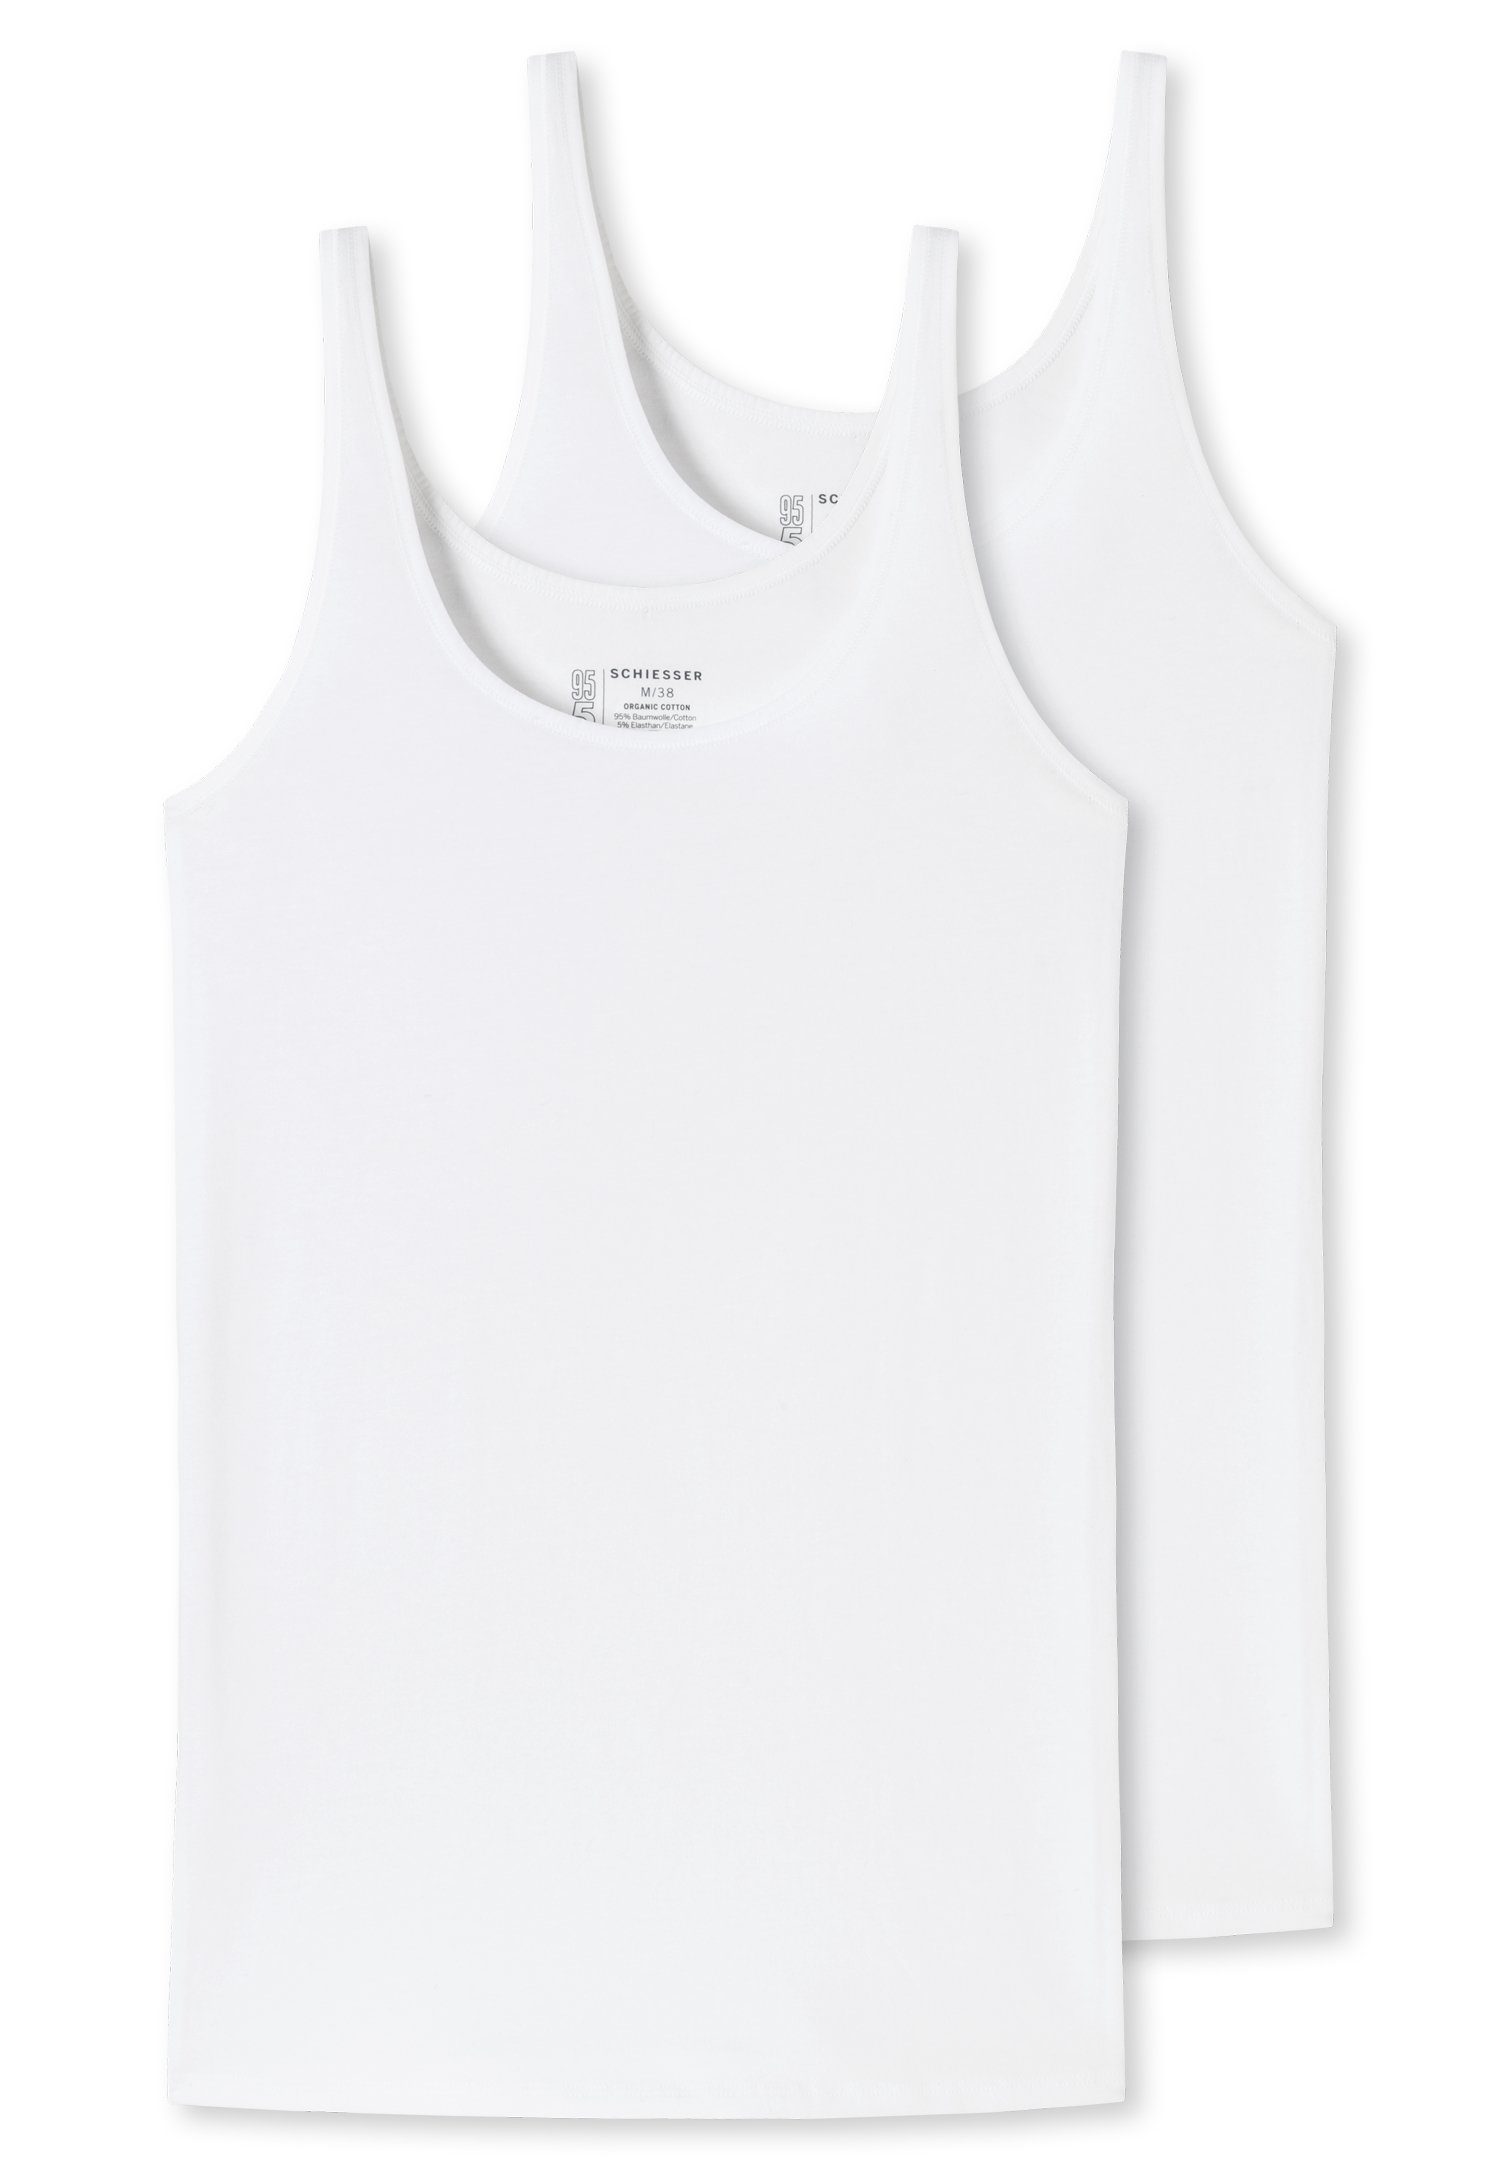 Schiesser Unterhemd (2er-Pack) mit elastischer 2xweiß Single-Jersey-Qualität